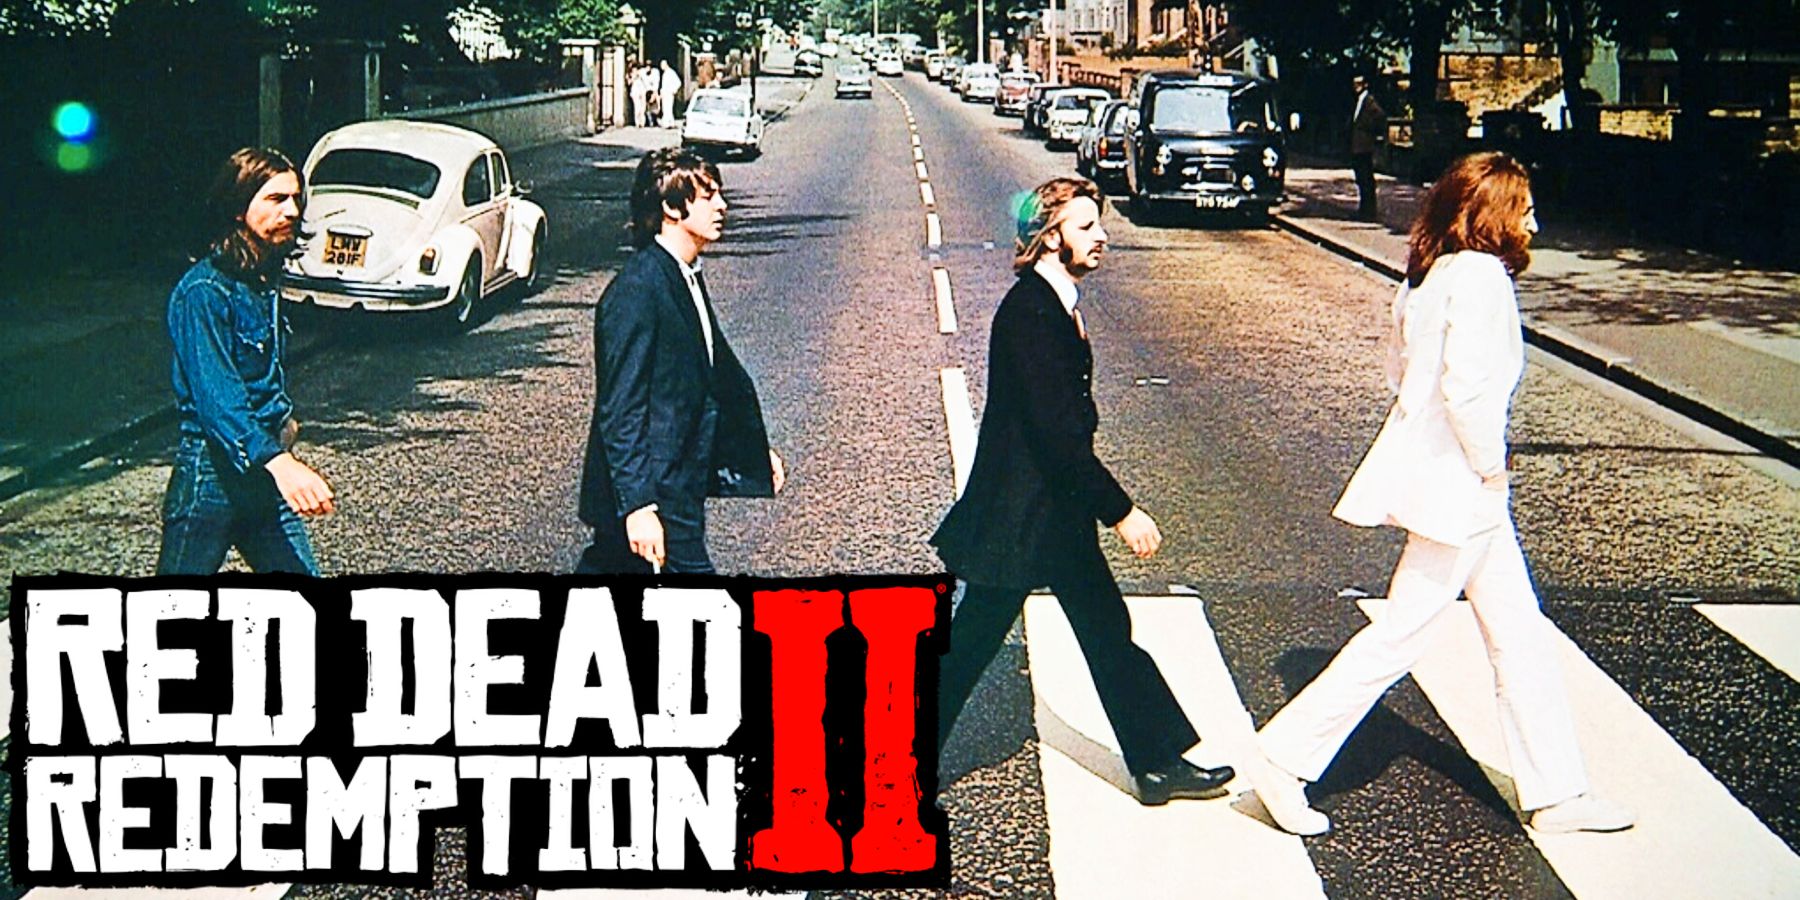 A Red Dead Redemption 2 rajongónak sikerült újra elkészítenie az ikonikus Beatles album borítóját a játékban